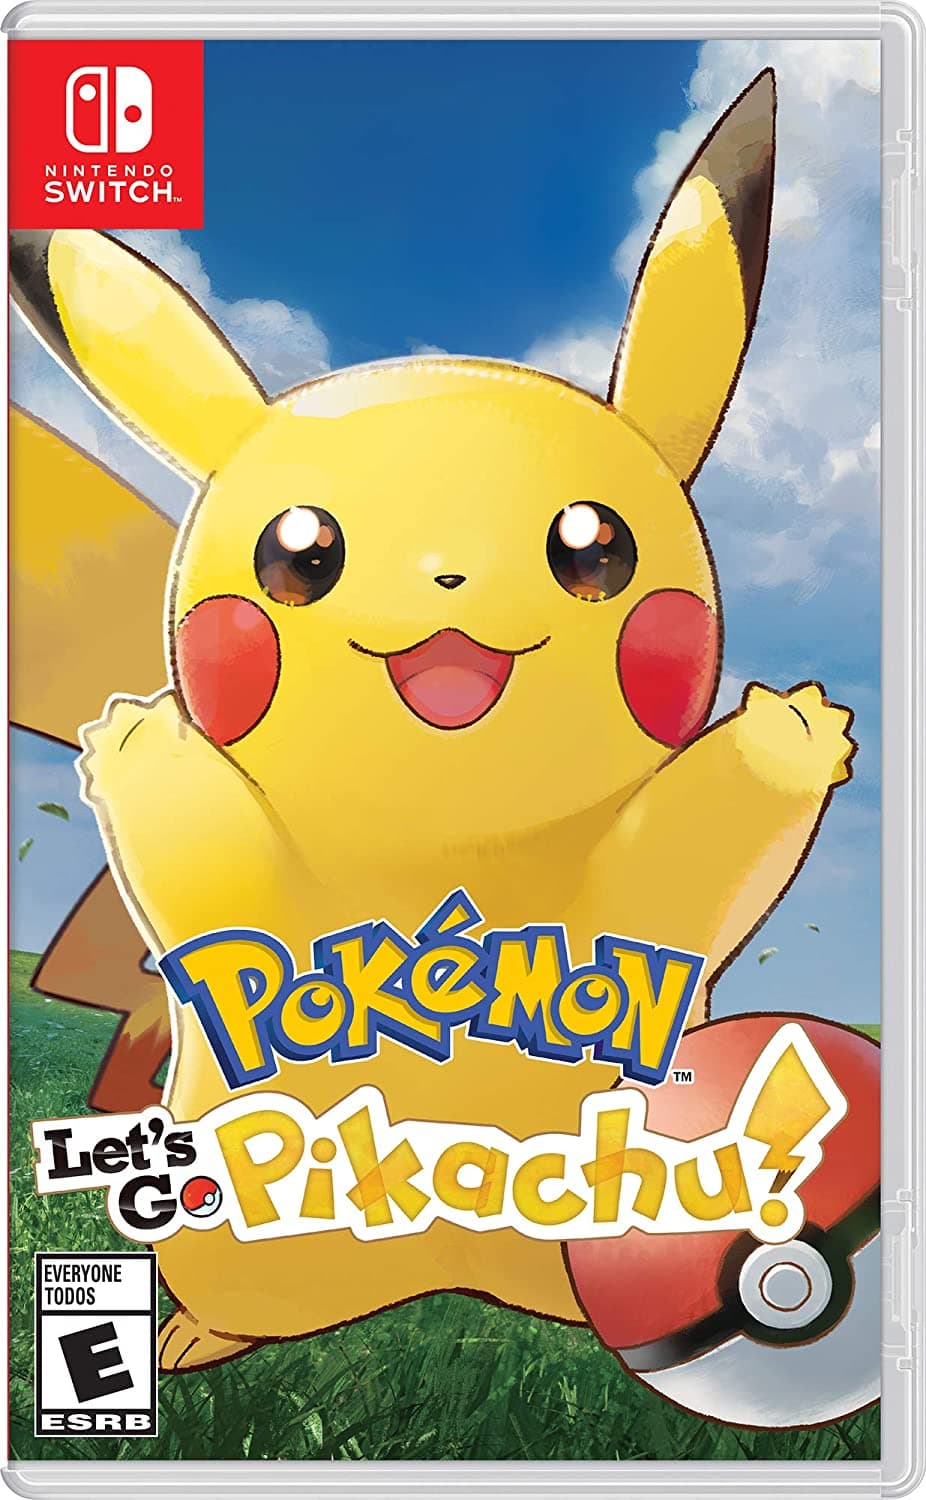 Pokémon Let's Go Pikachu für Nintendo Switch.